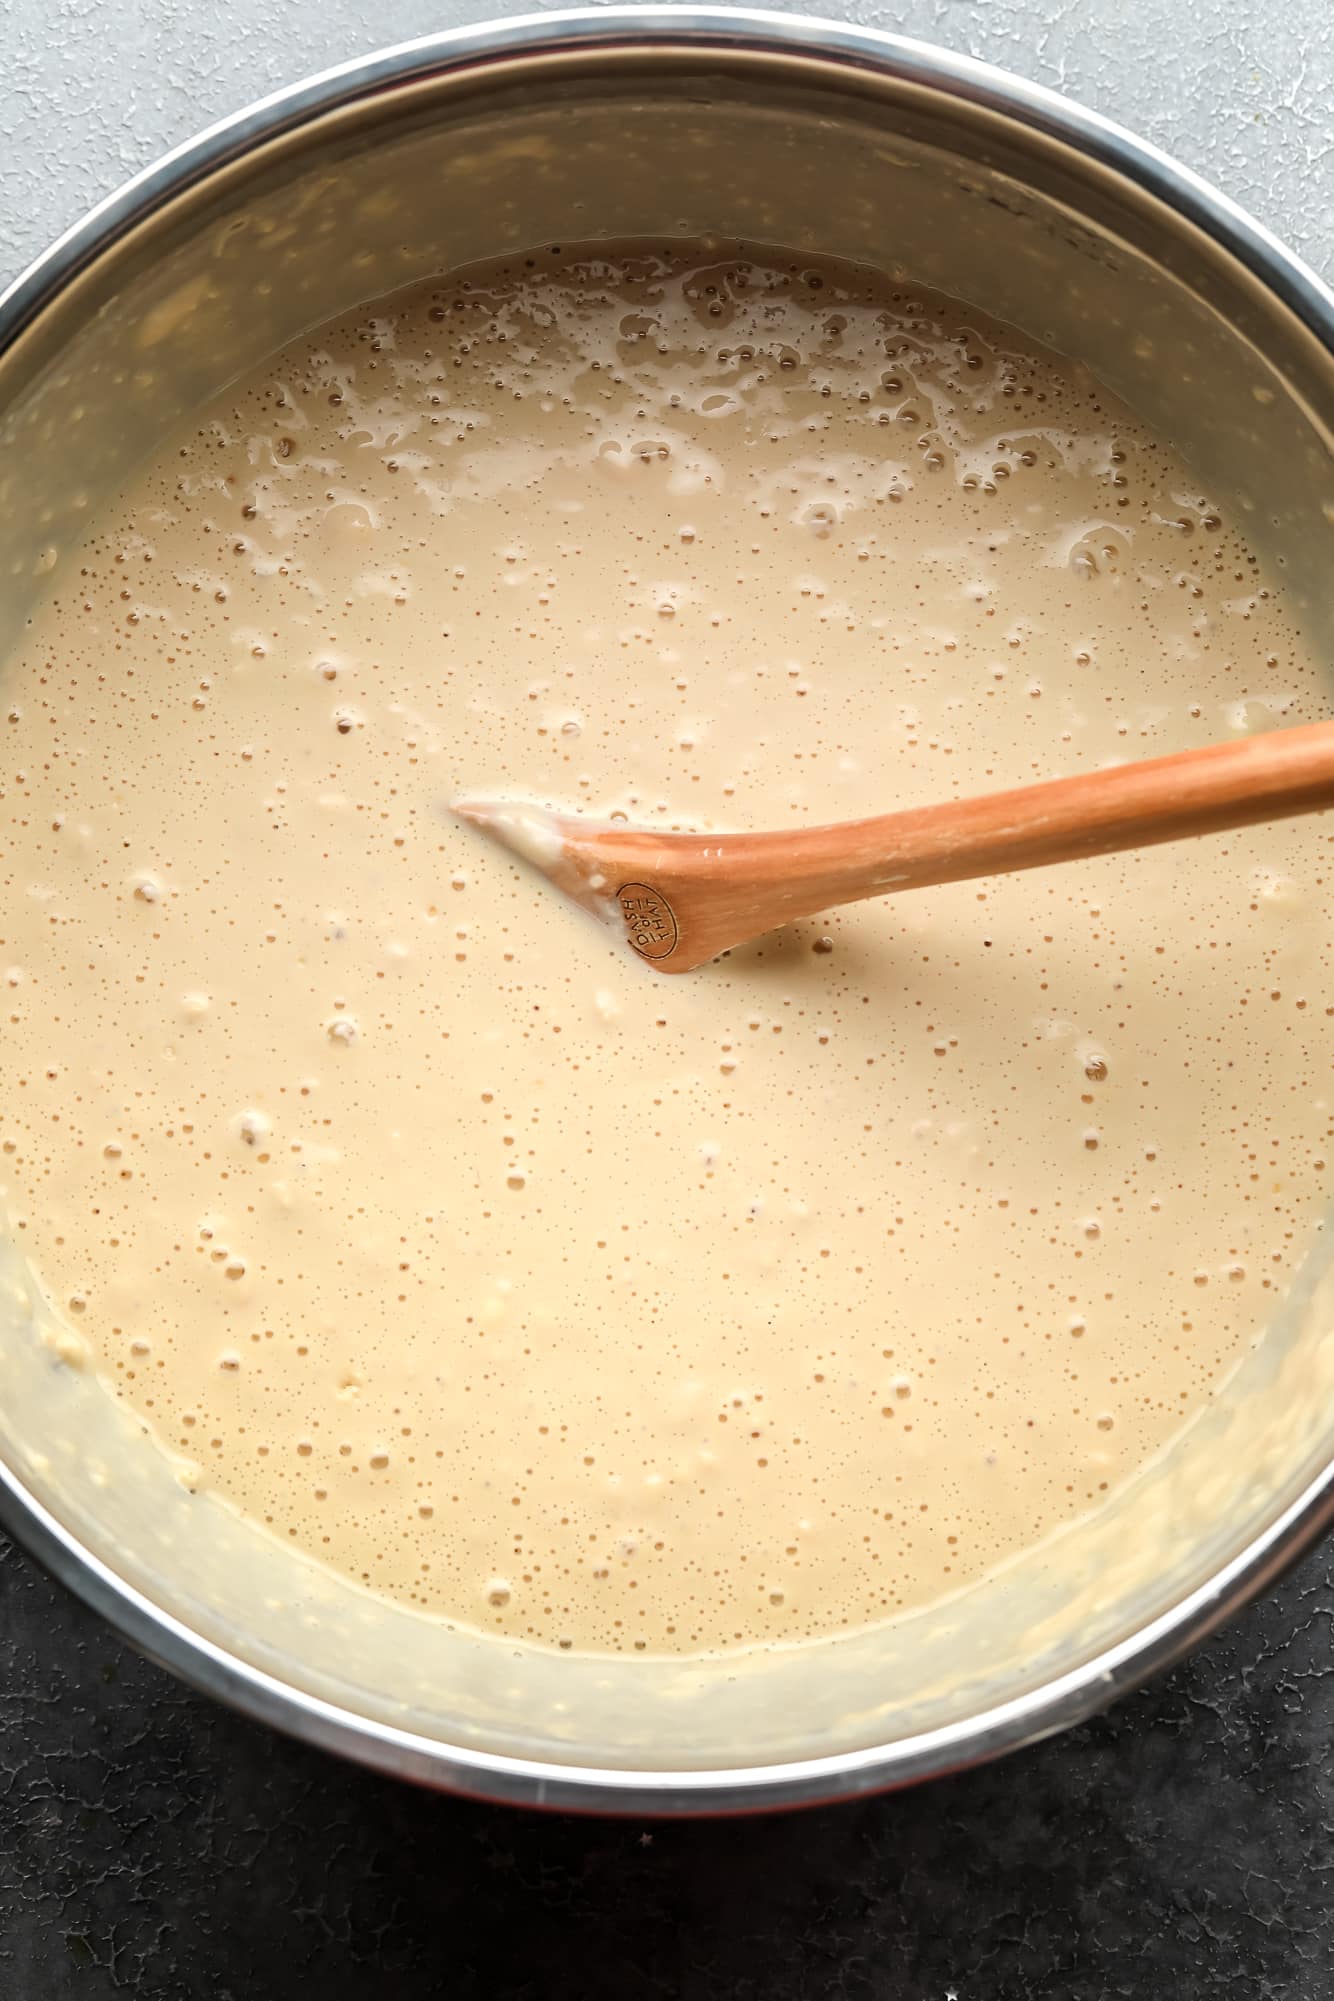 using a wooden spoon to stir vegan pancake batter in a large metal bowl.